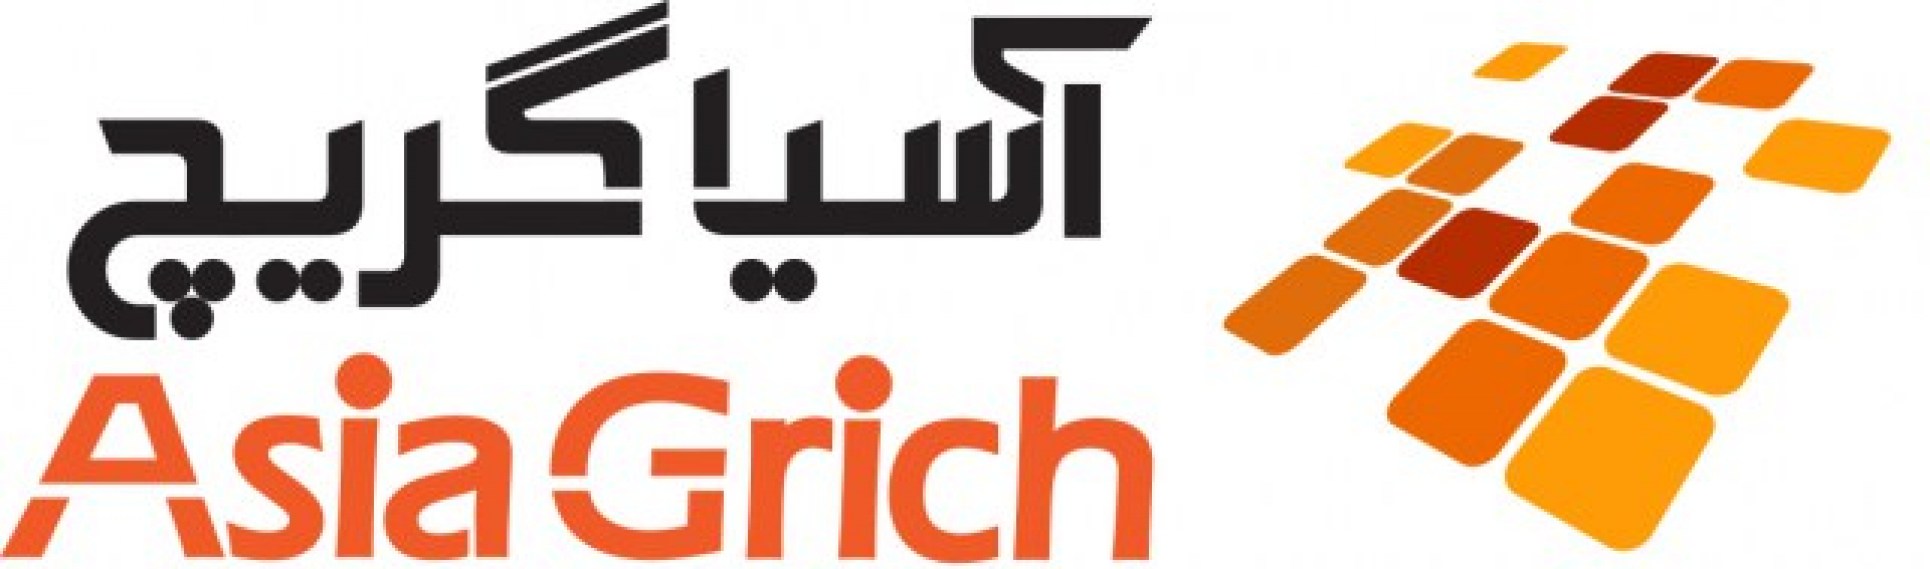 Asia Grich